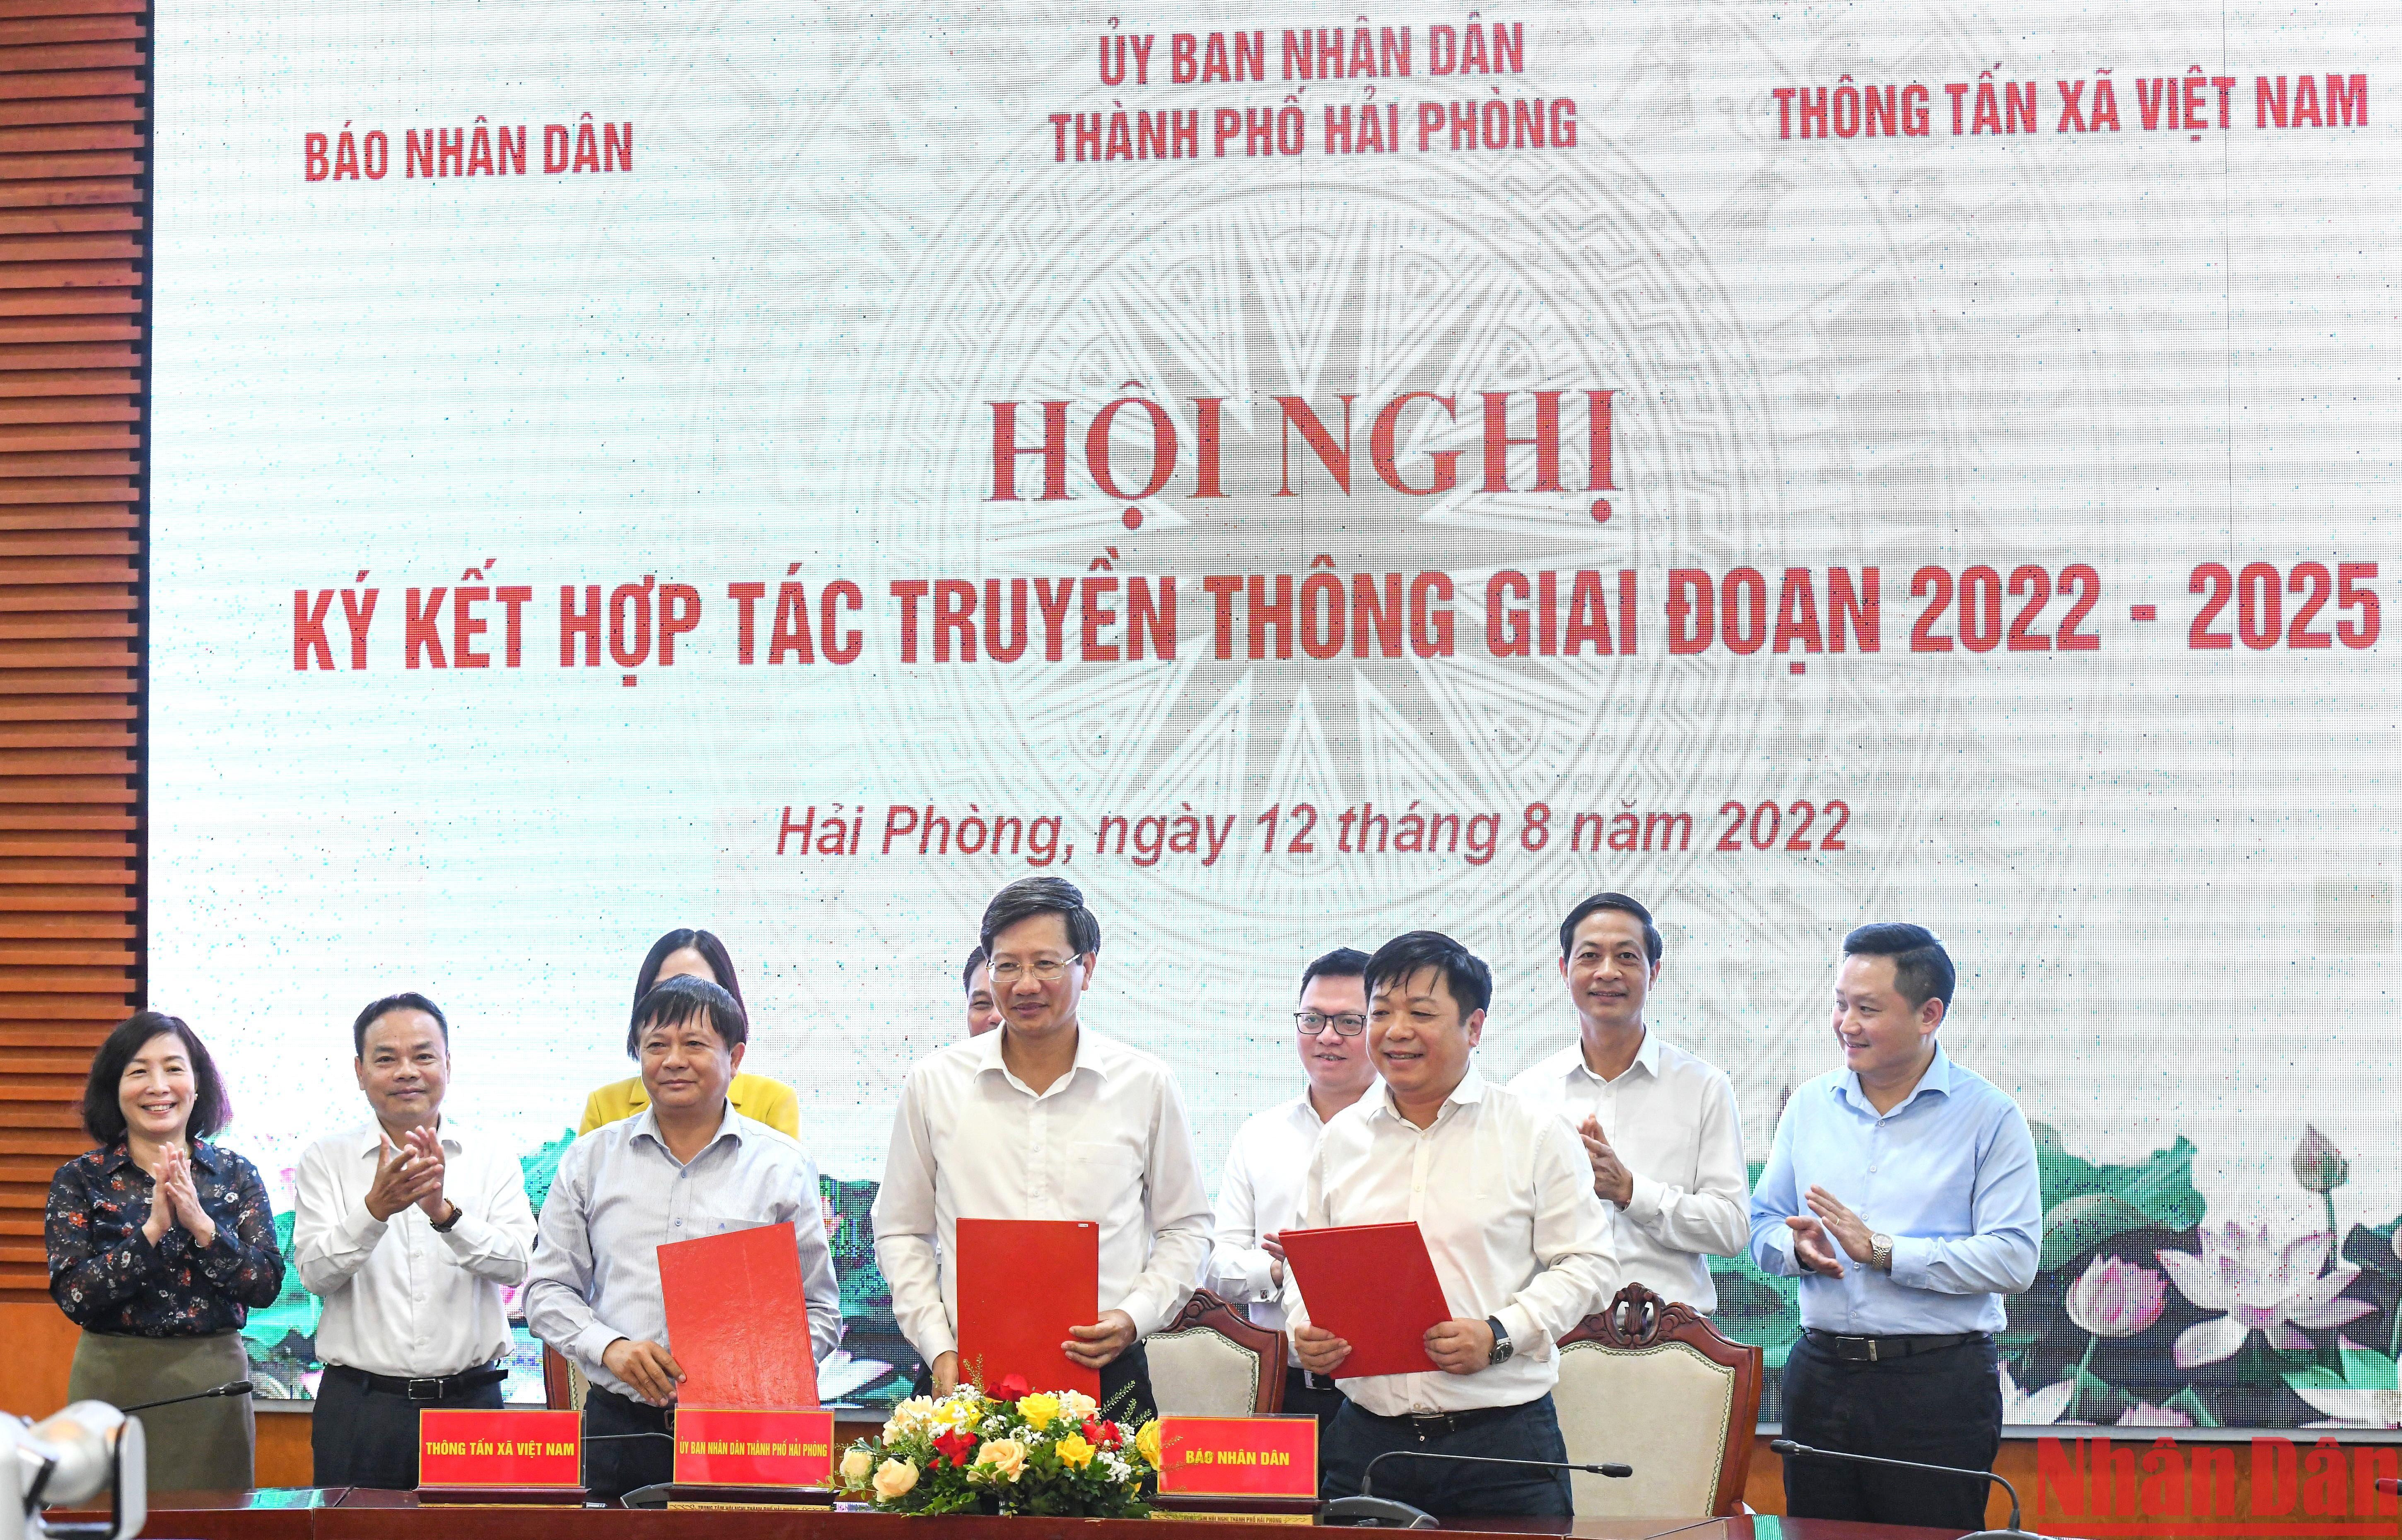 Lễ ký kết hợp tác truyền thông giữa UBND thành phố Hải Phòng với Báo Nhân Dân và Thông tấn xã Việt Nam giai đoạn 2022 -2025 